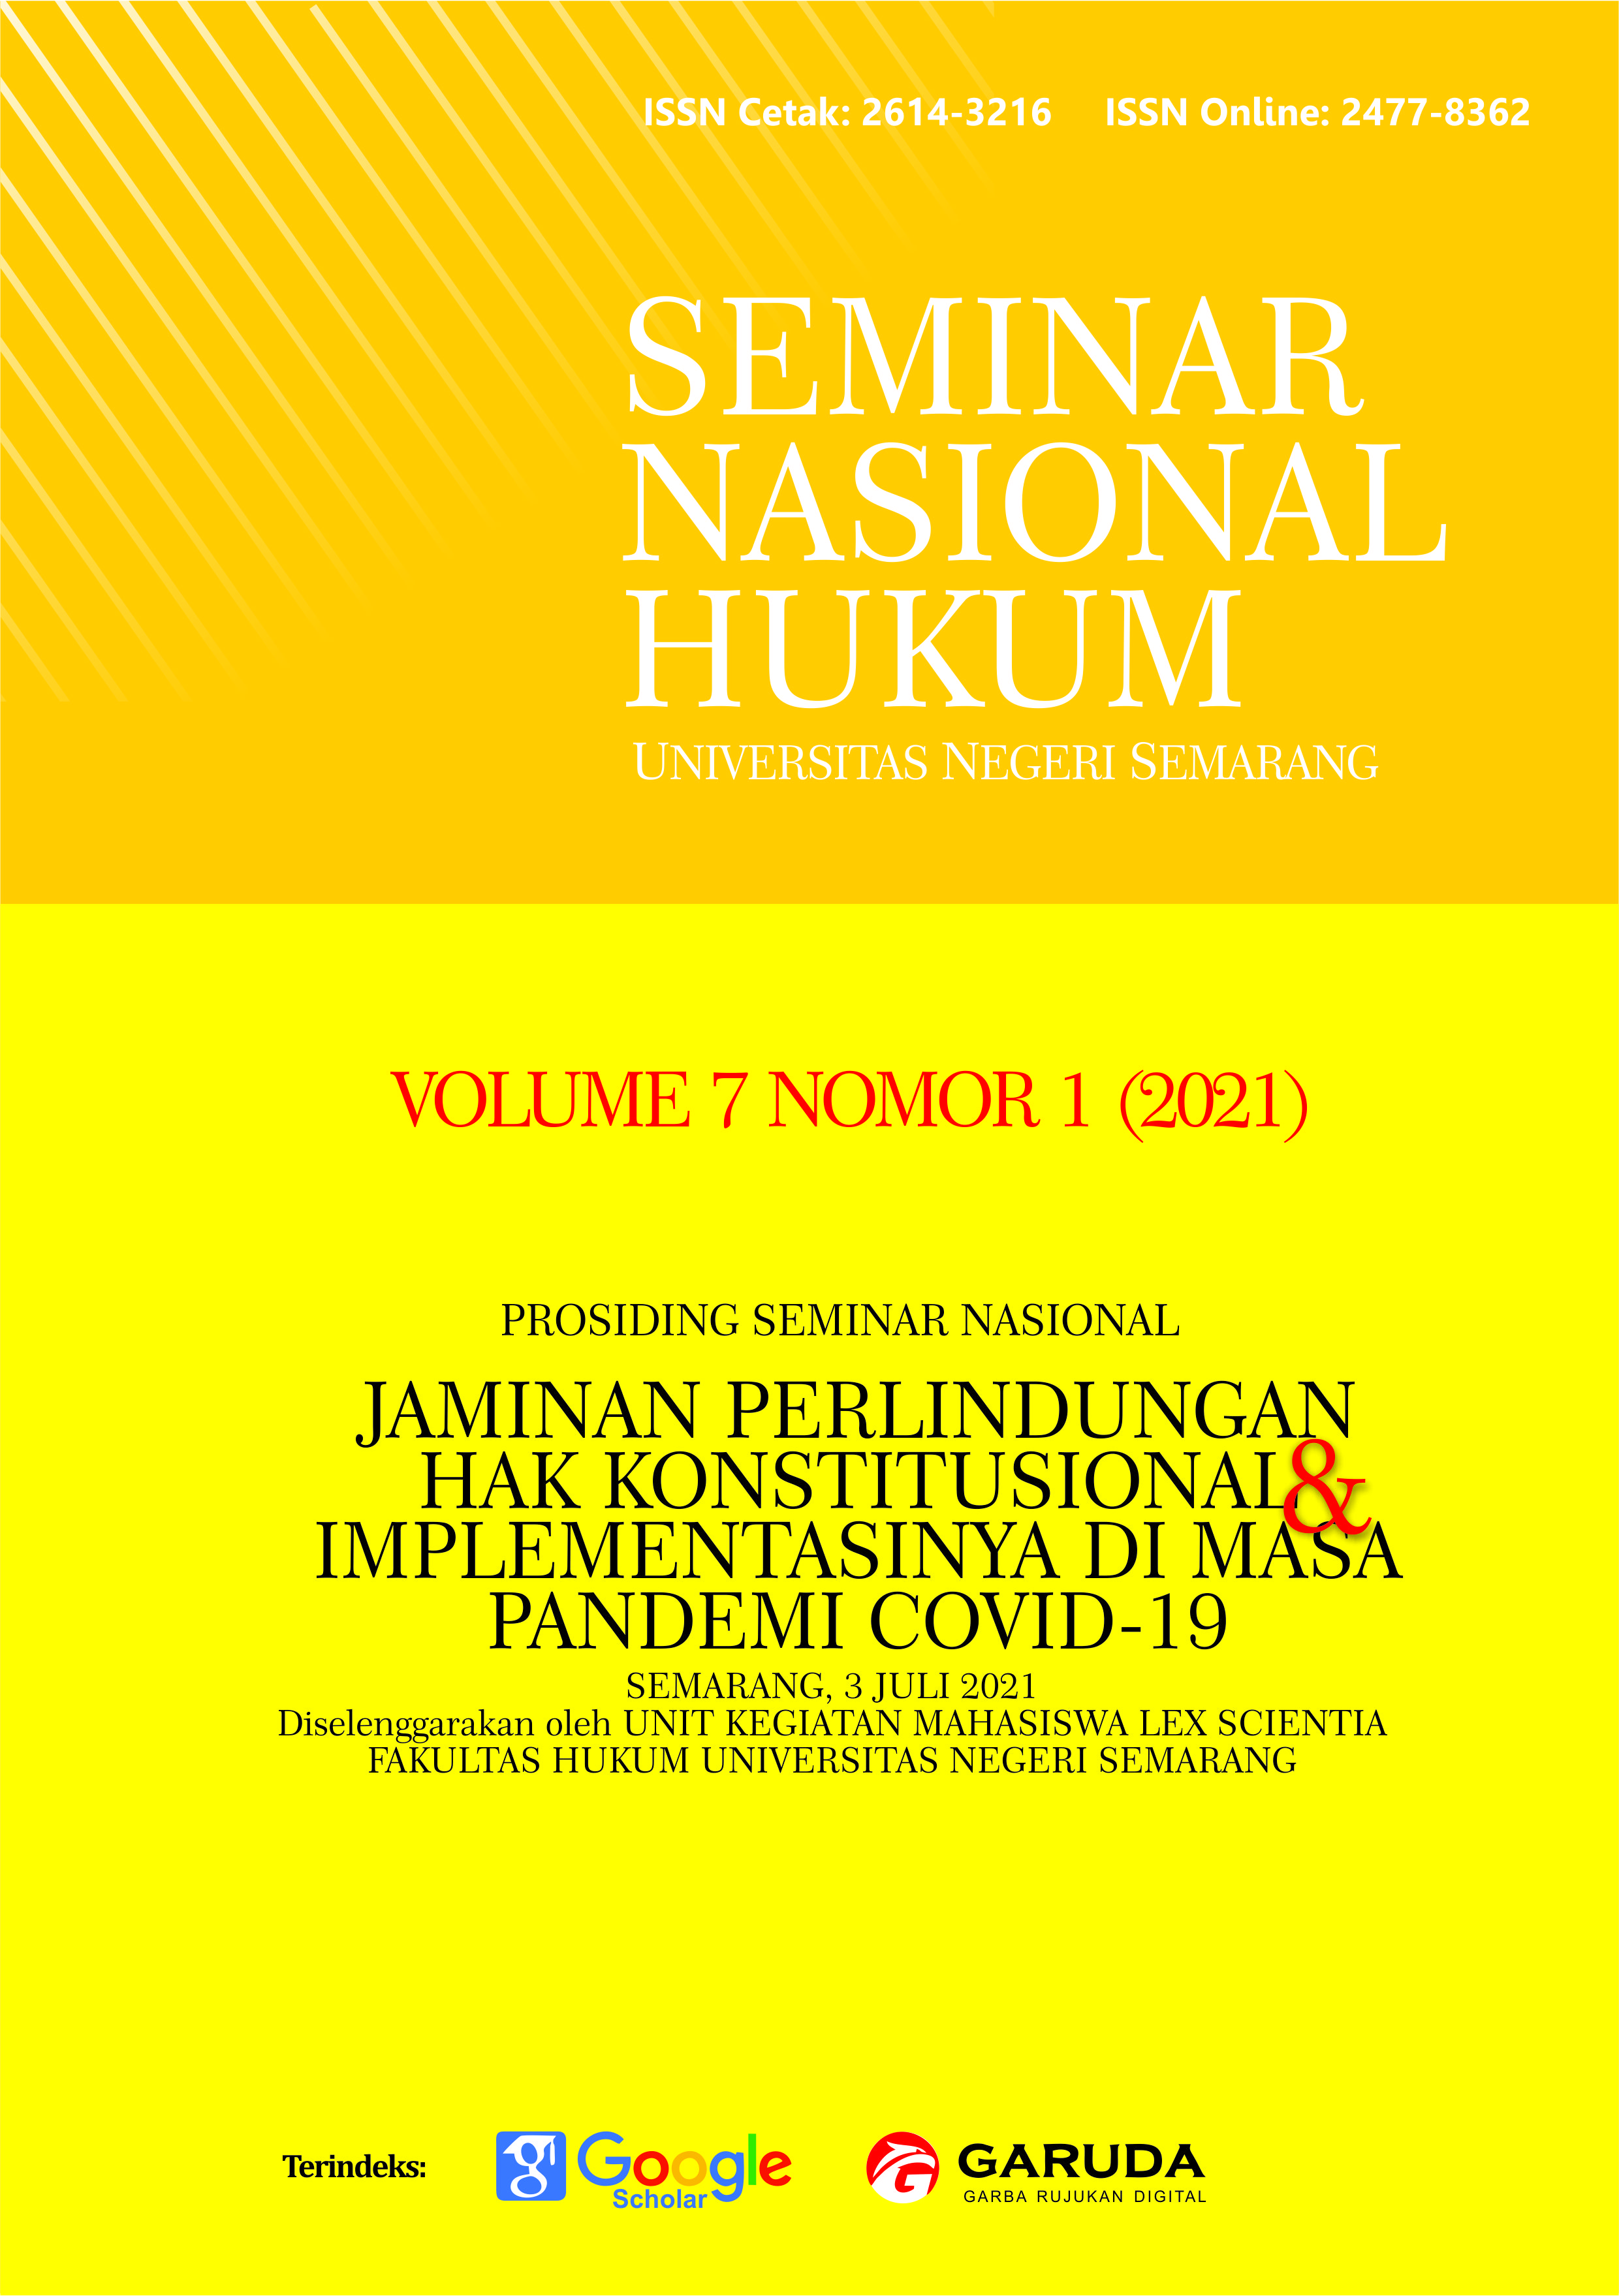 					View Vol. 7 No. 1 (2021): Seminar Nasional Jaminan Perlindungan Hak Konstitusional dan Implementasinya di Masa Pandemi Covid-19
				